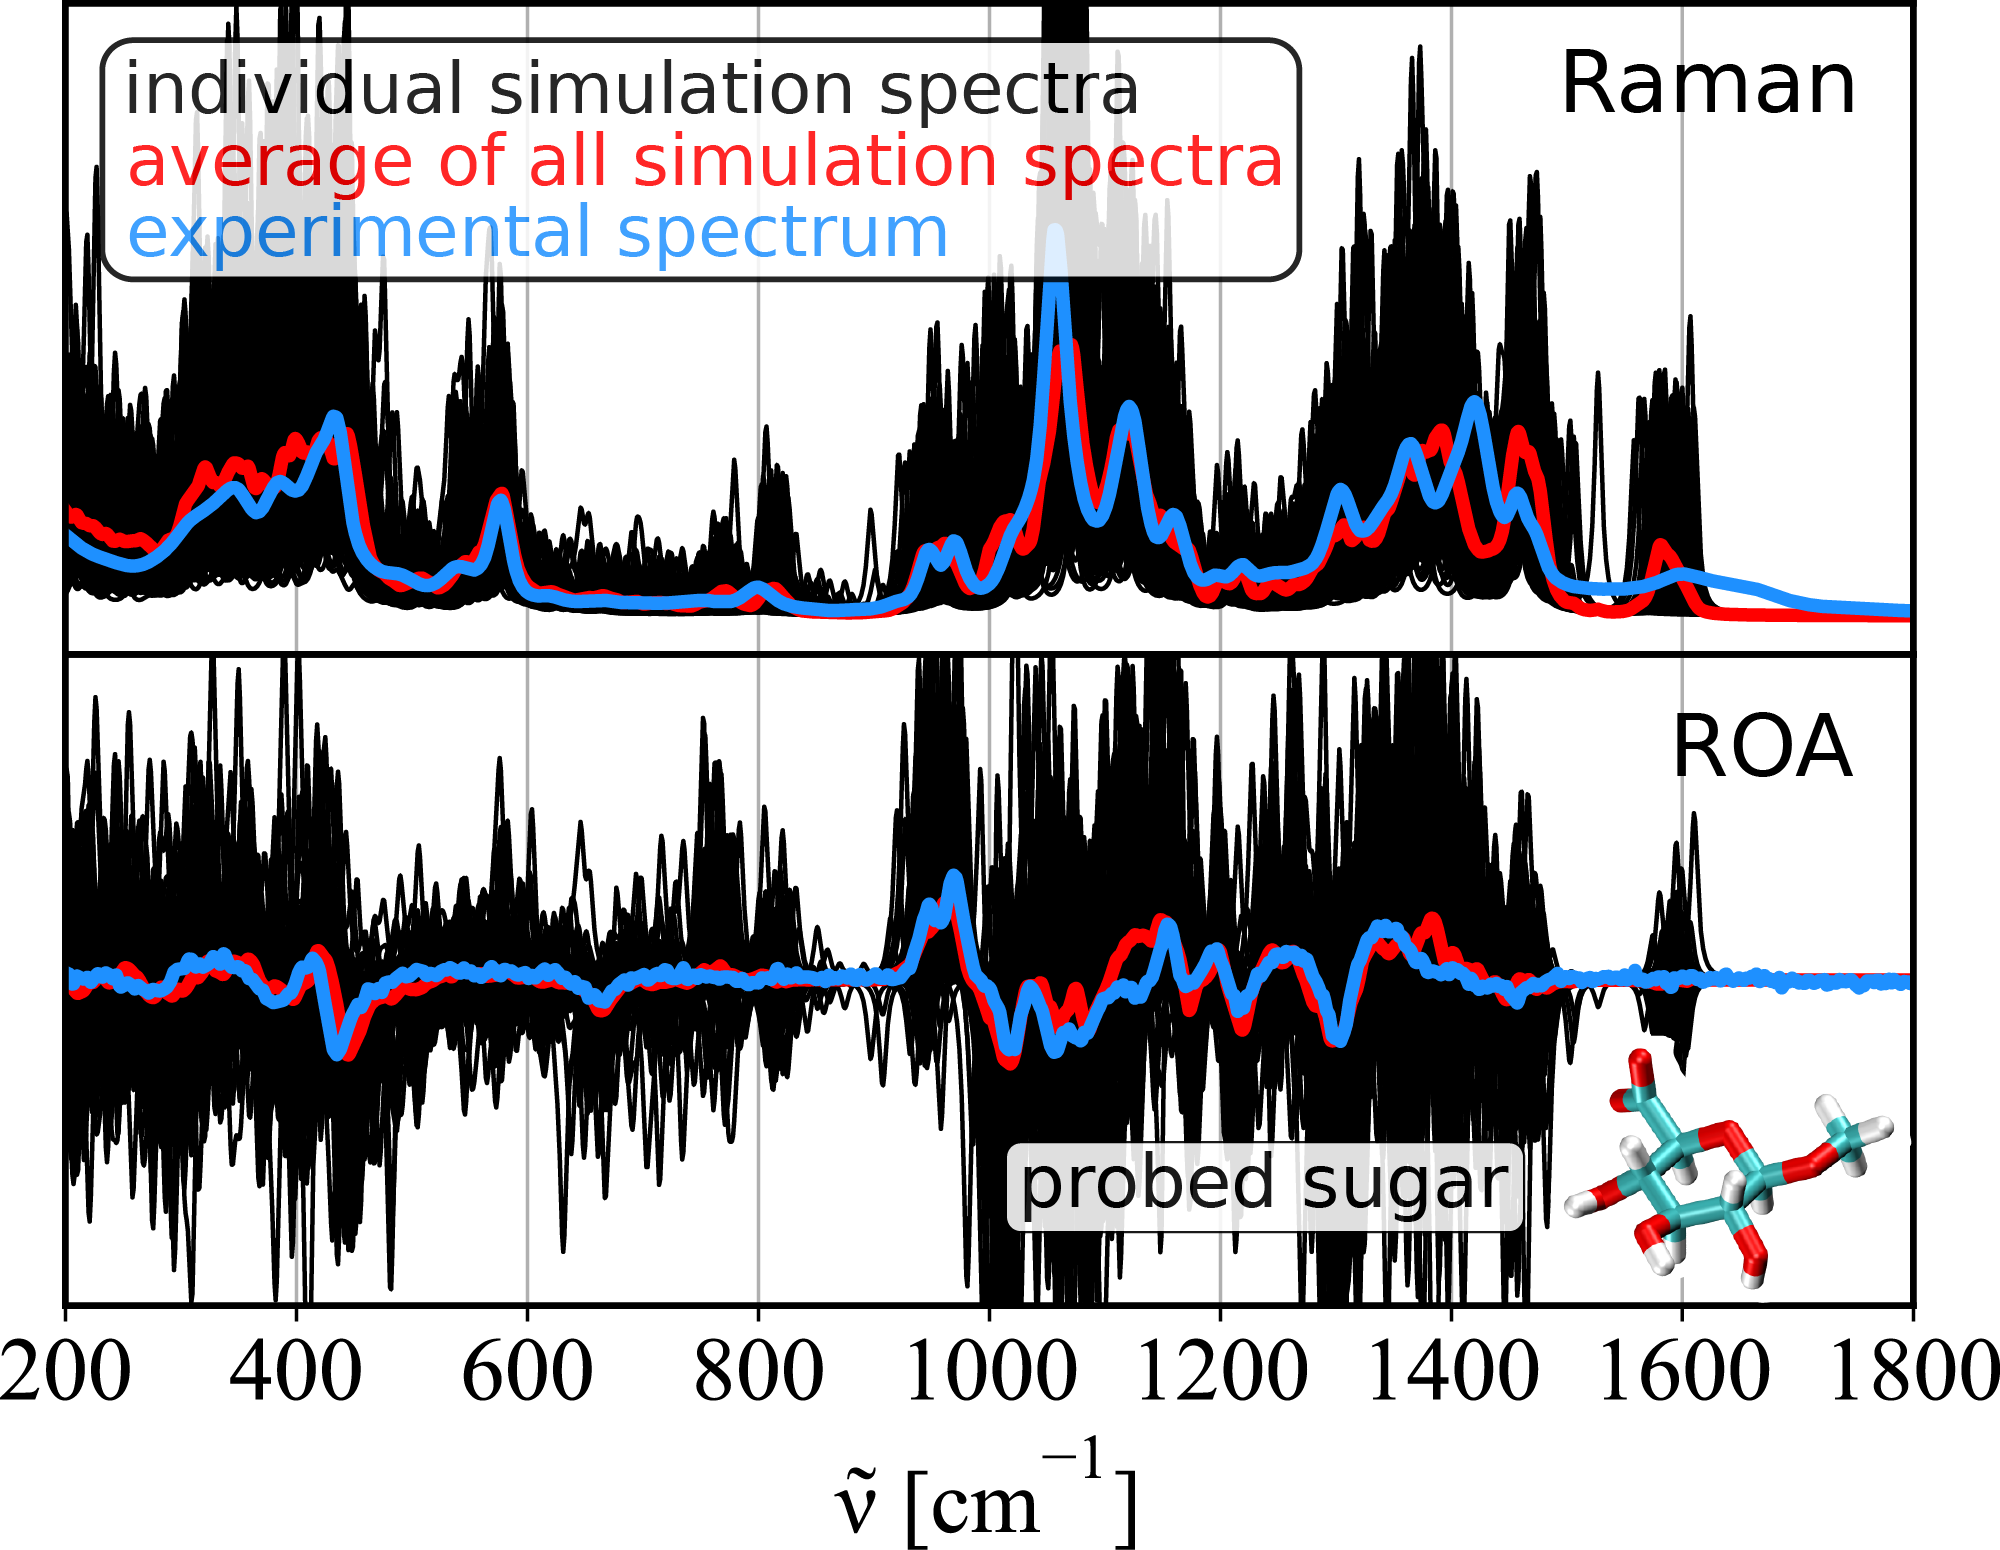 Zjednodušená simulace Ramanových spekter umožní lépe porozumět sacharidům